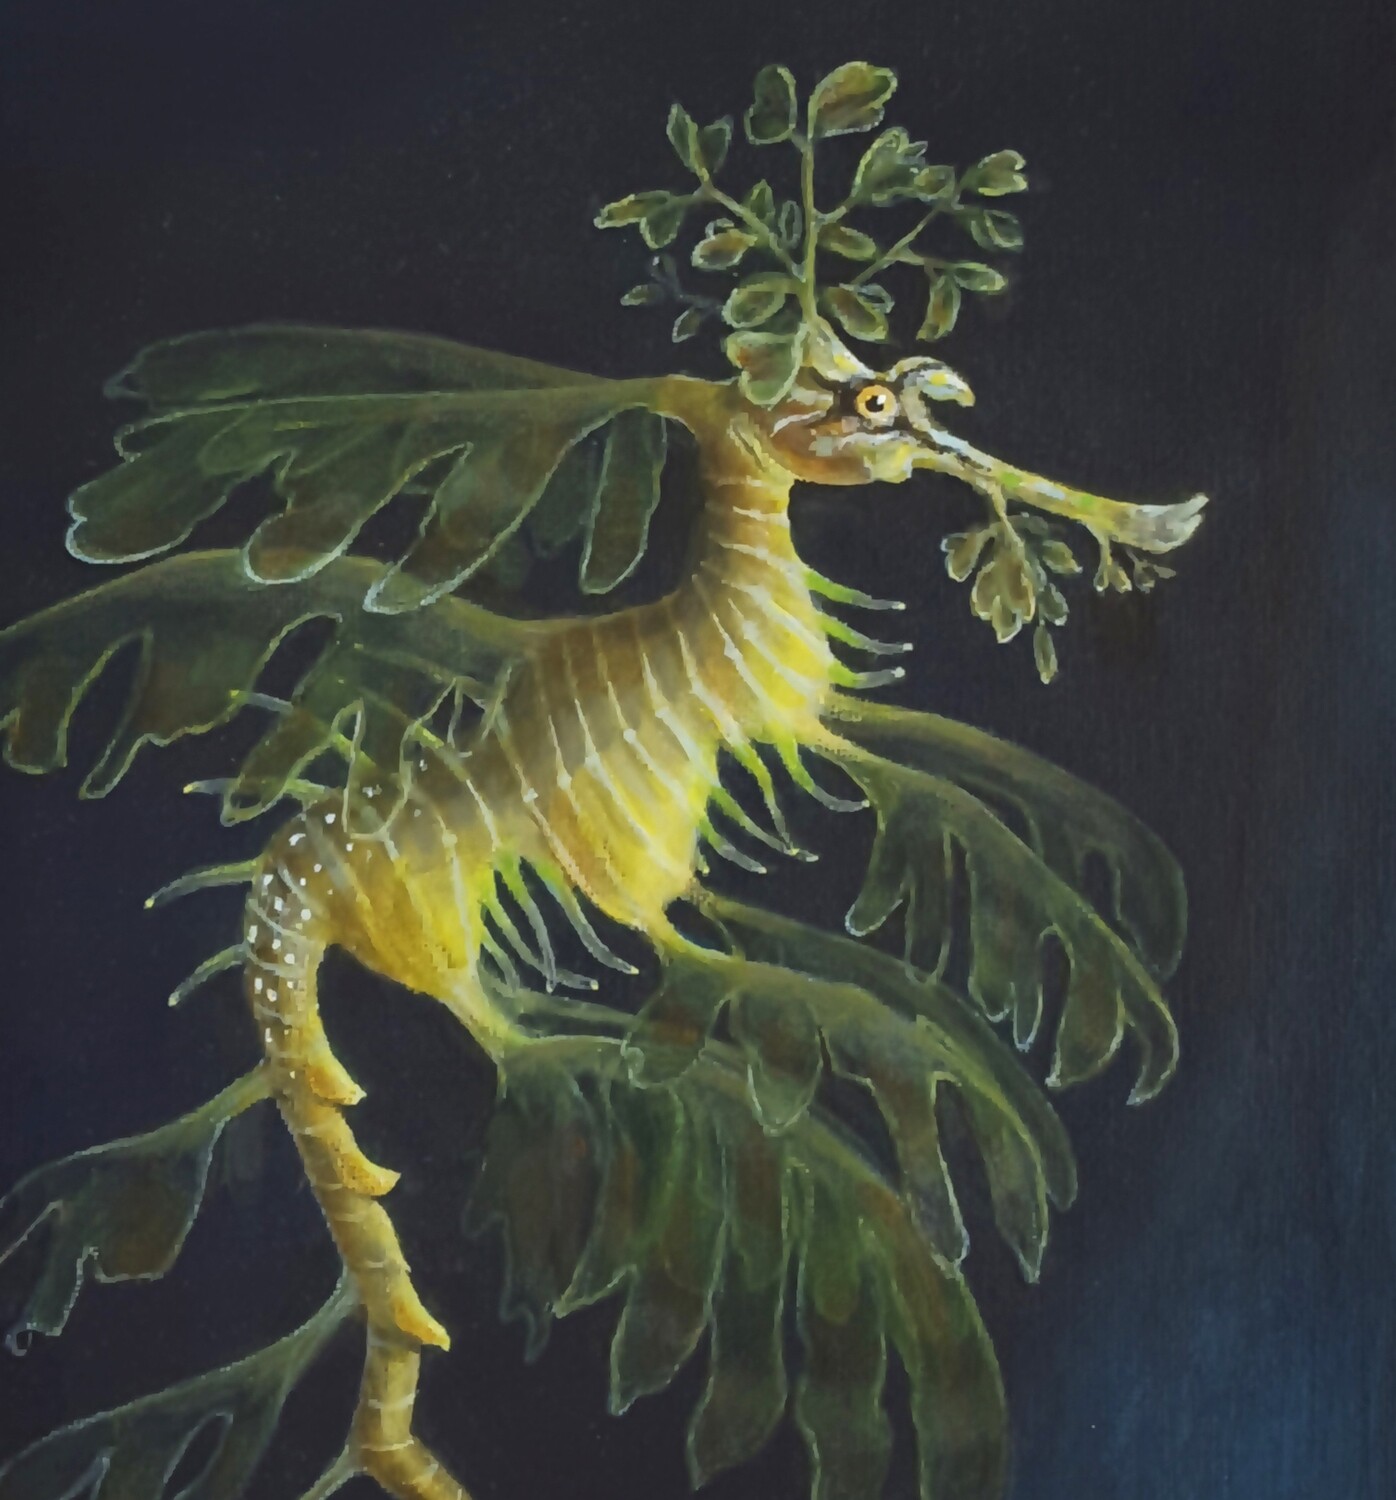 leafy sea dragon
SOLD